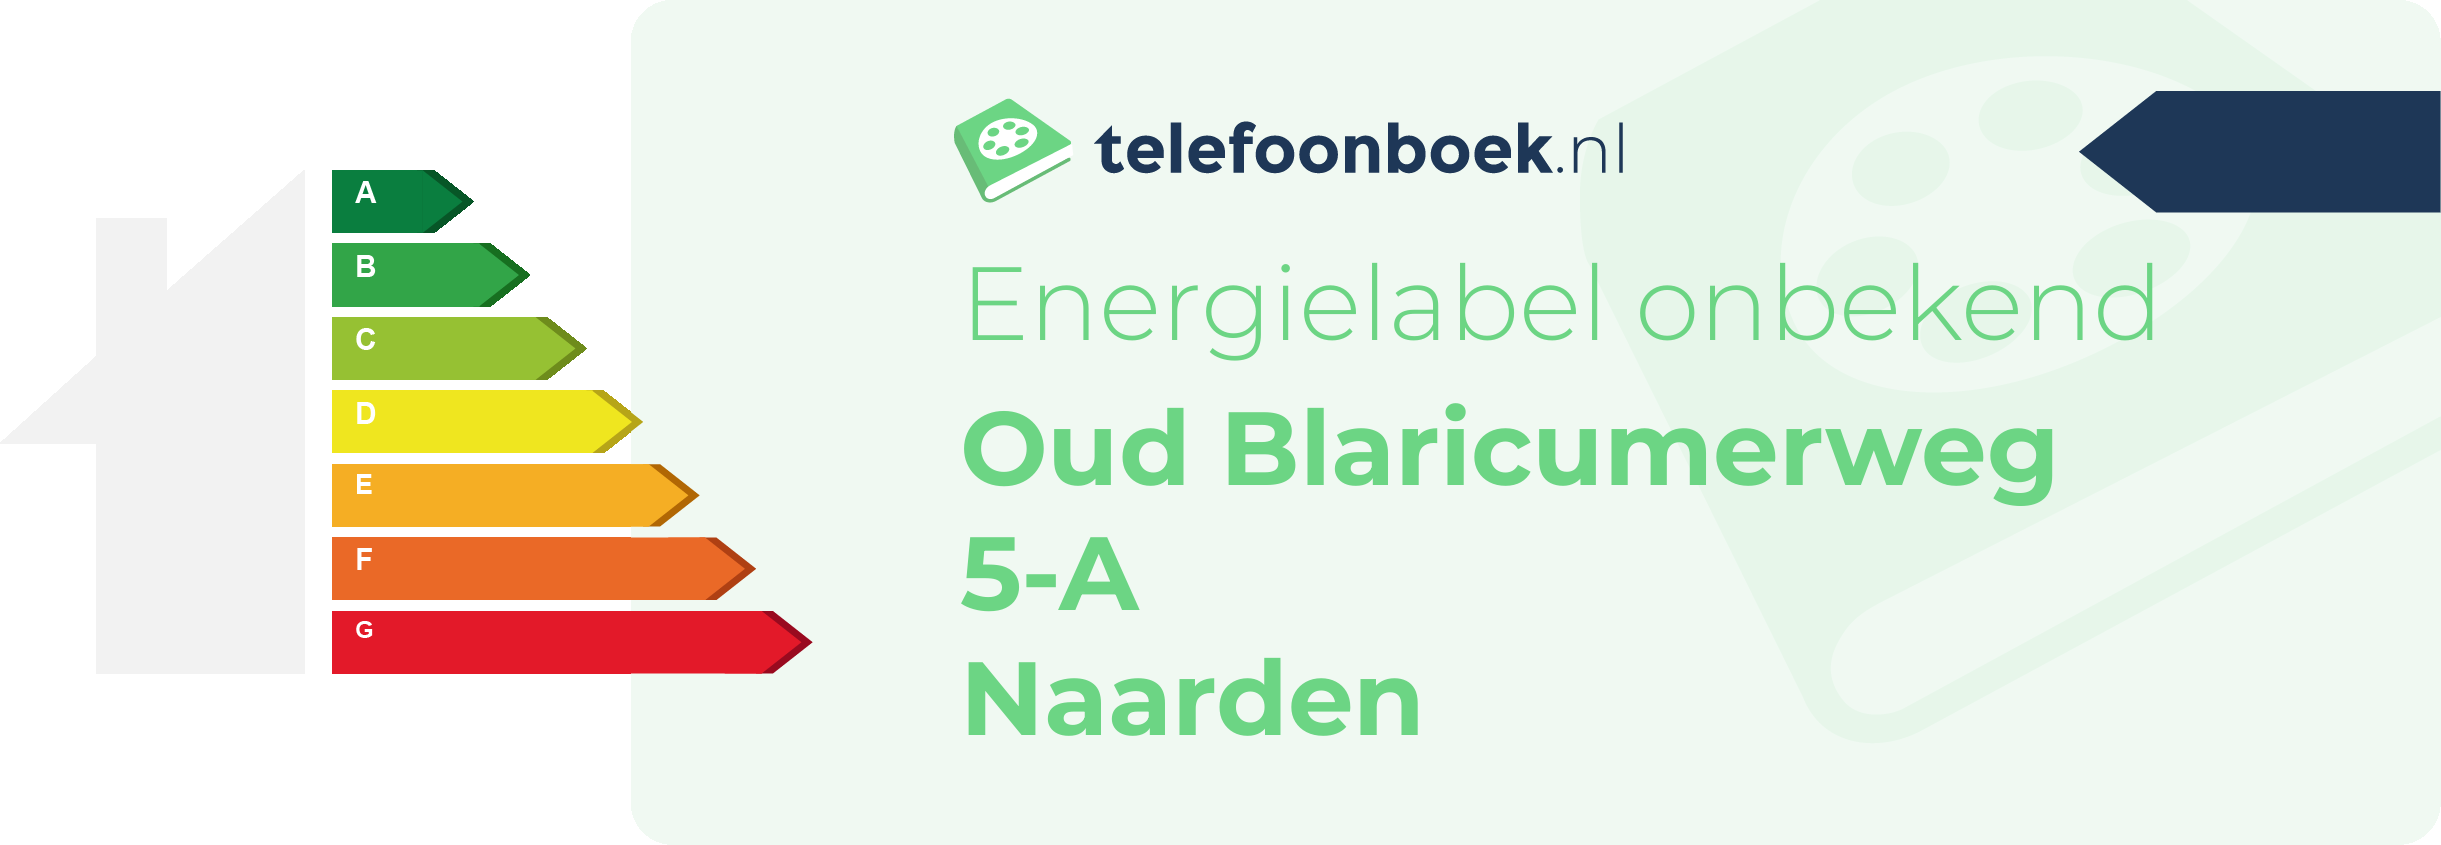 Energielabel Oud Blaricumerweg 5-A Naarden